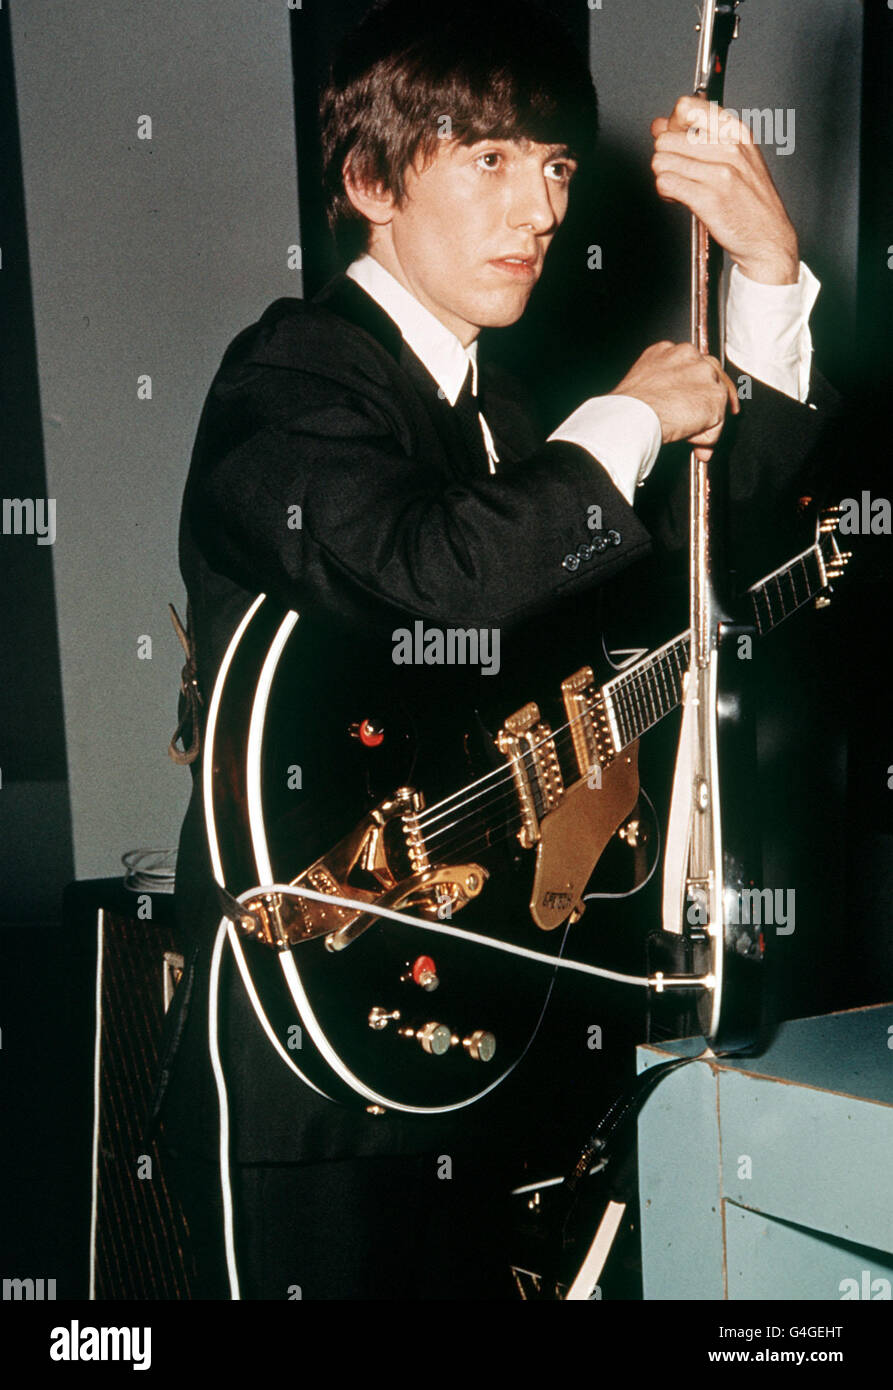 George harrison guitar immagini e fotografie stock ad alta risoluzione -  Alamy